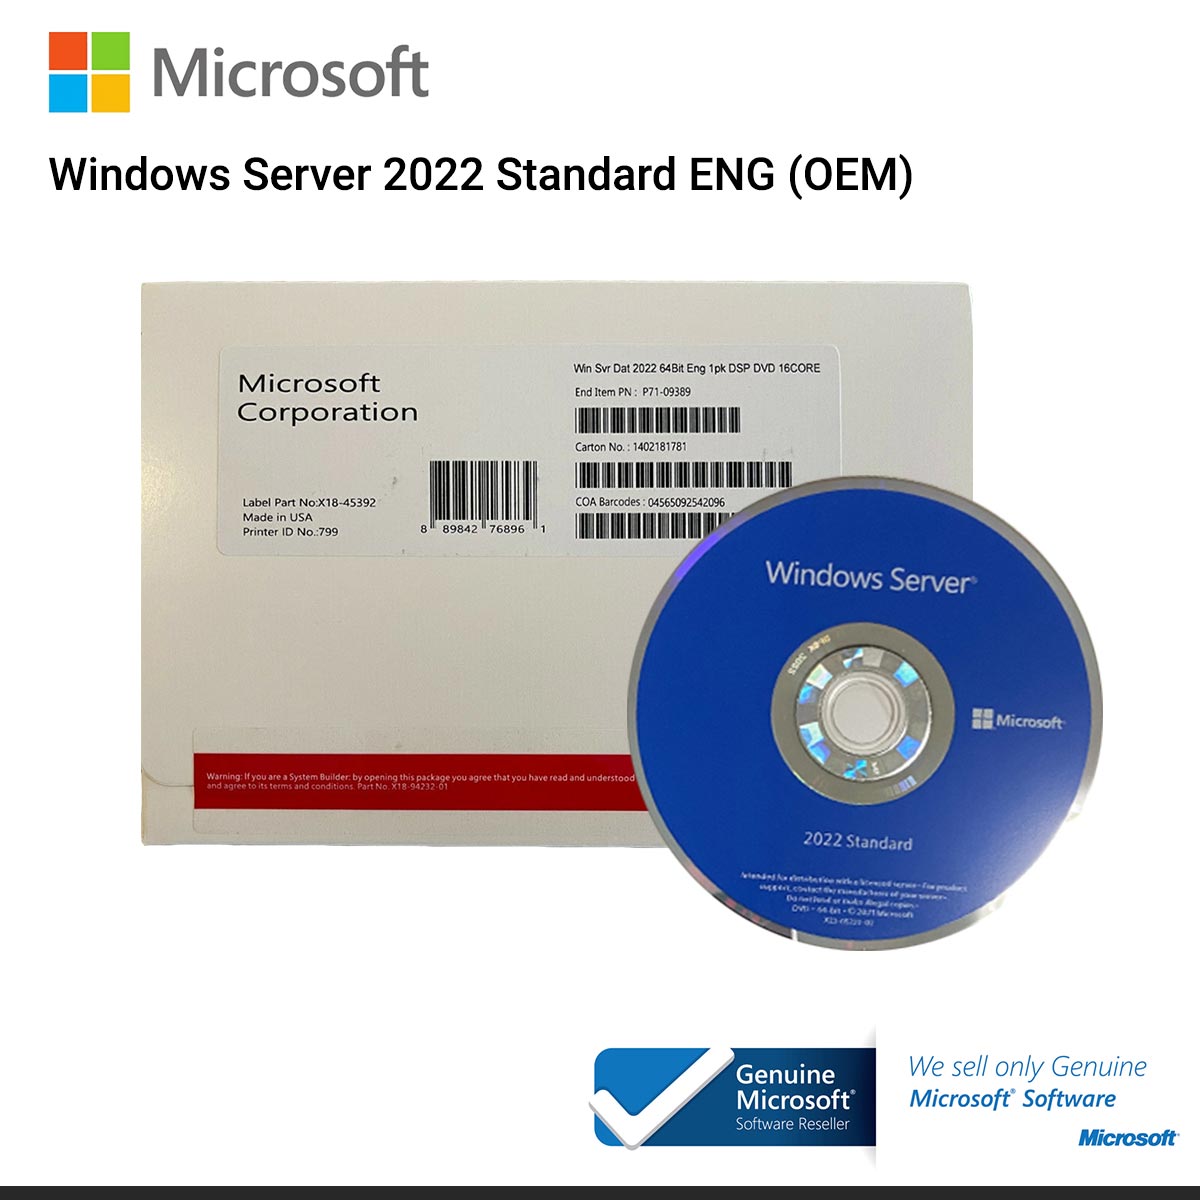 Windows Server 2022 Standard x64 En Inff 1pk DSP OEI USB 16 CORE (P73-08328)